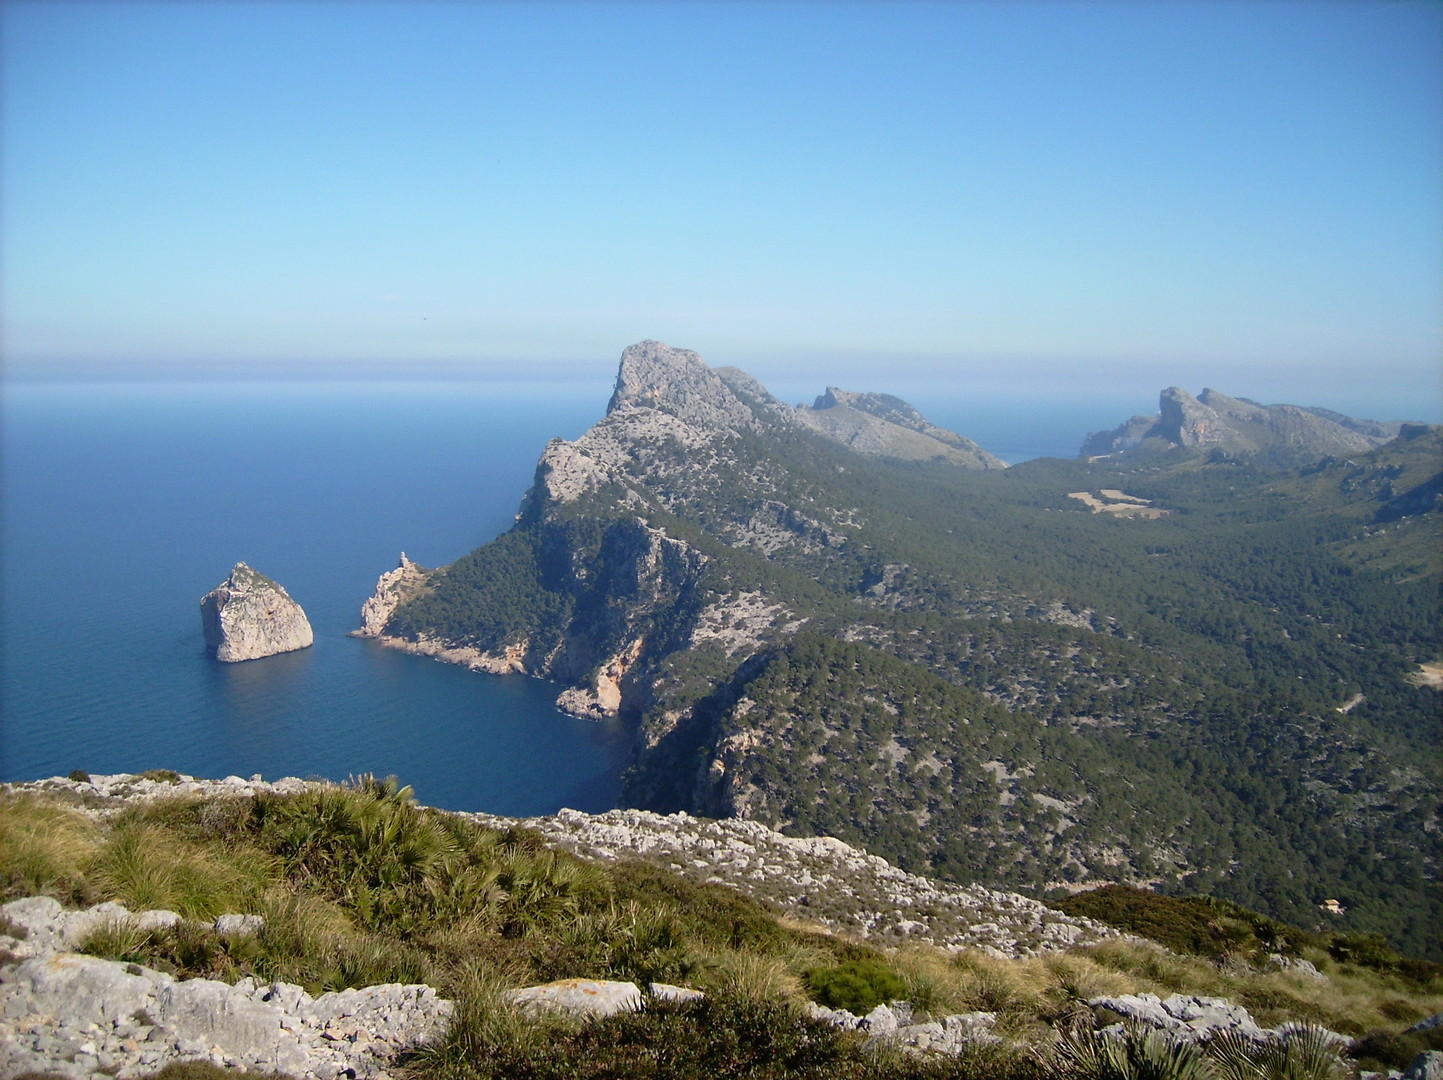 Ausblick auf die Halbinsel Formentor vom alten Wachturm Almallutx.